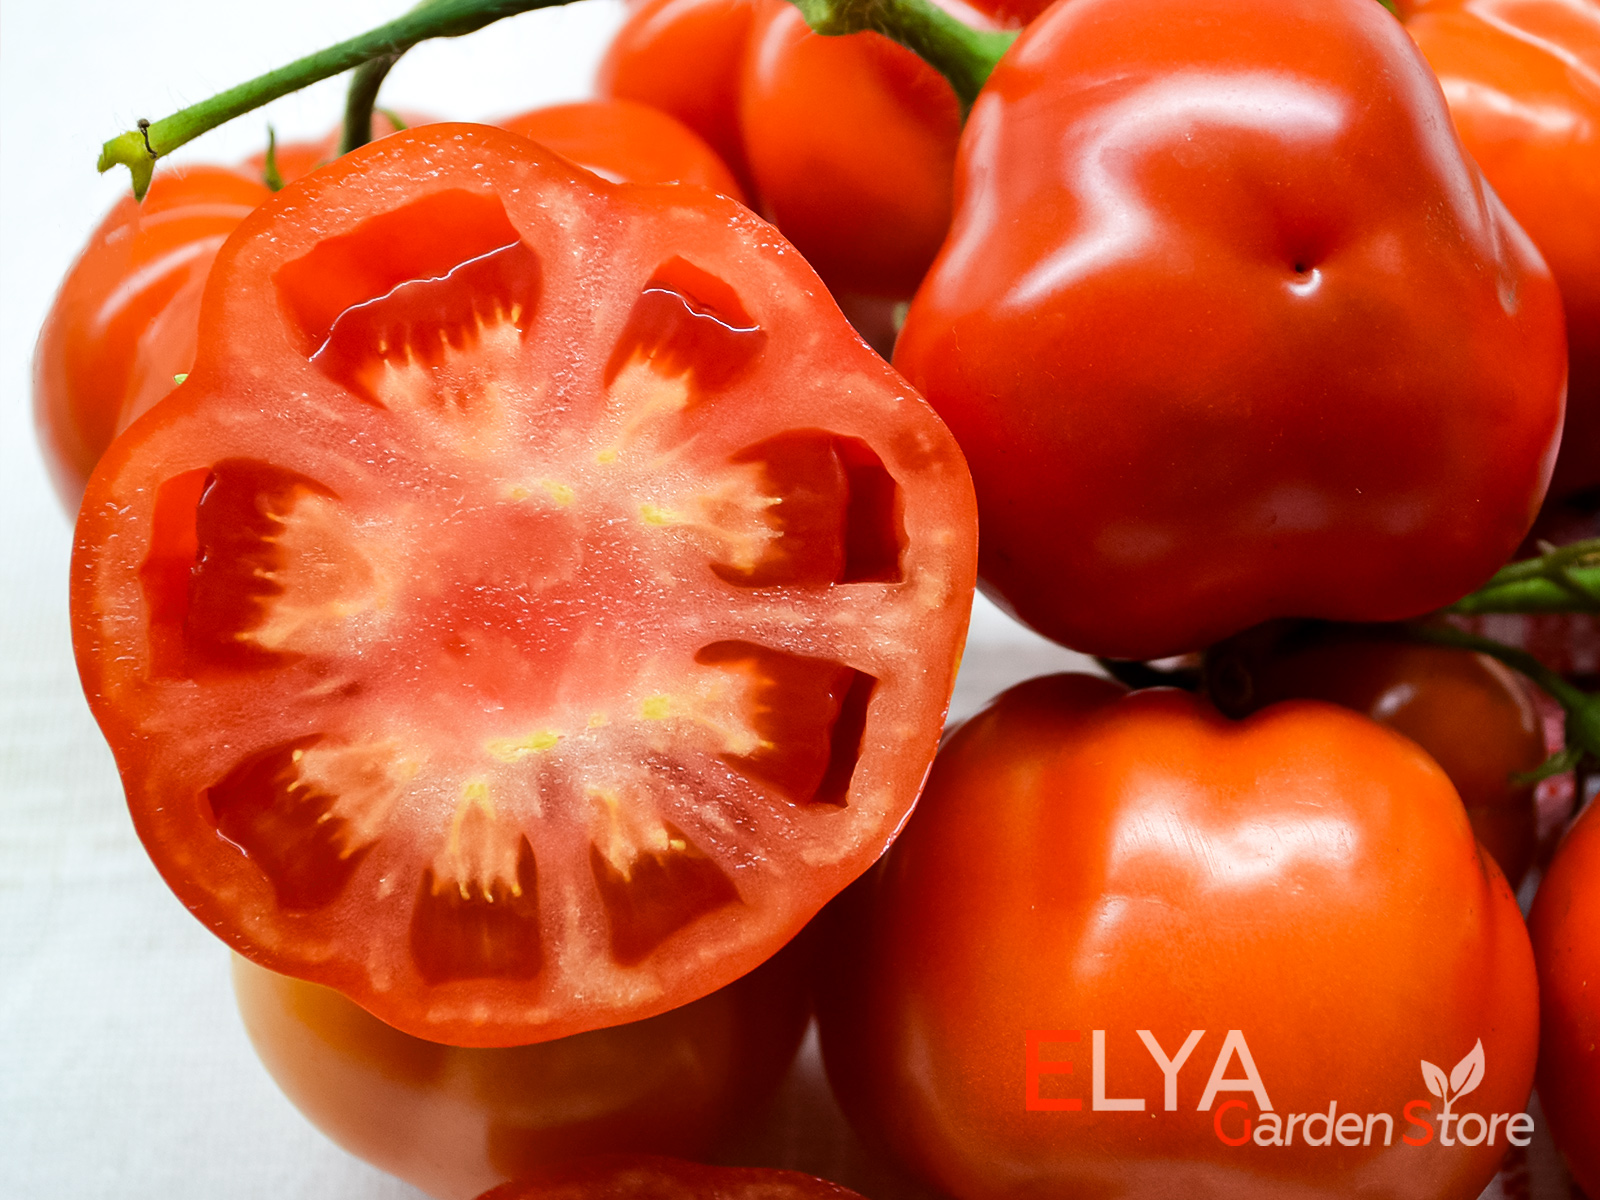 Коллекционный сорт томата Июньский - семена в магазине Elya Garden